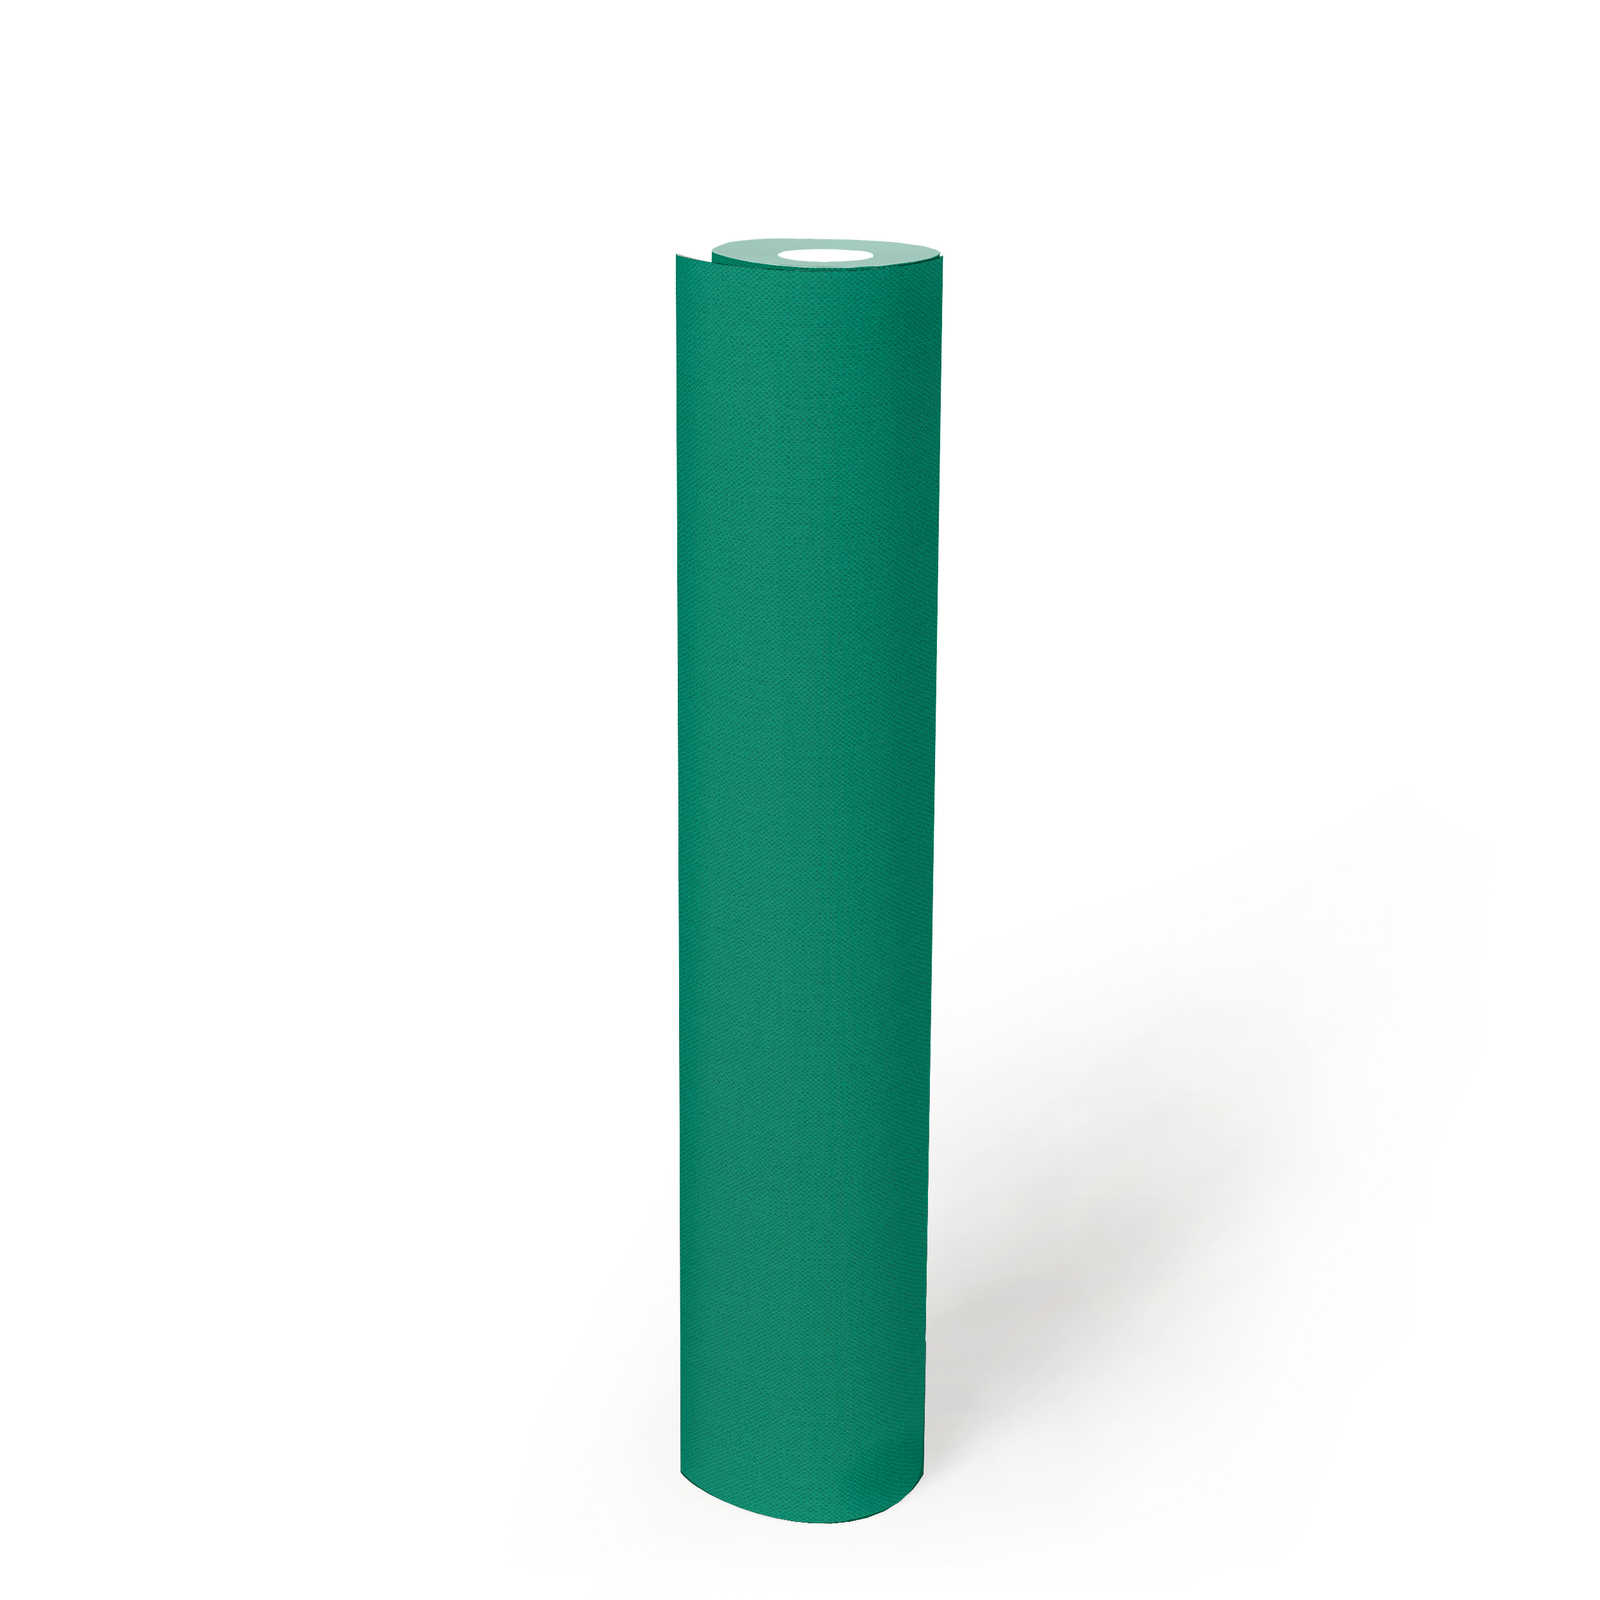             papel pintado verde con estructura textil mate uni signal green
        